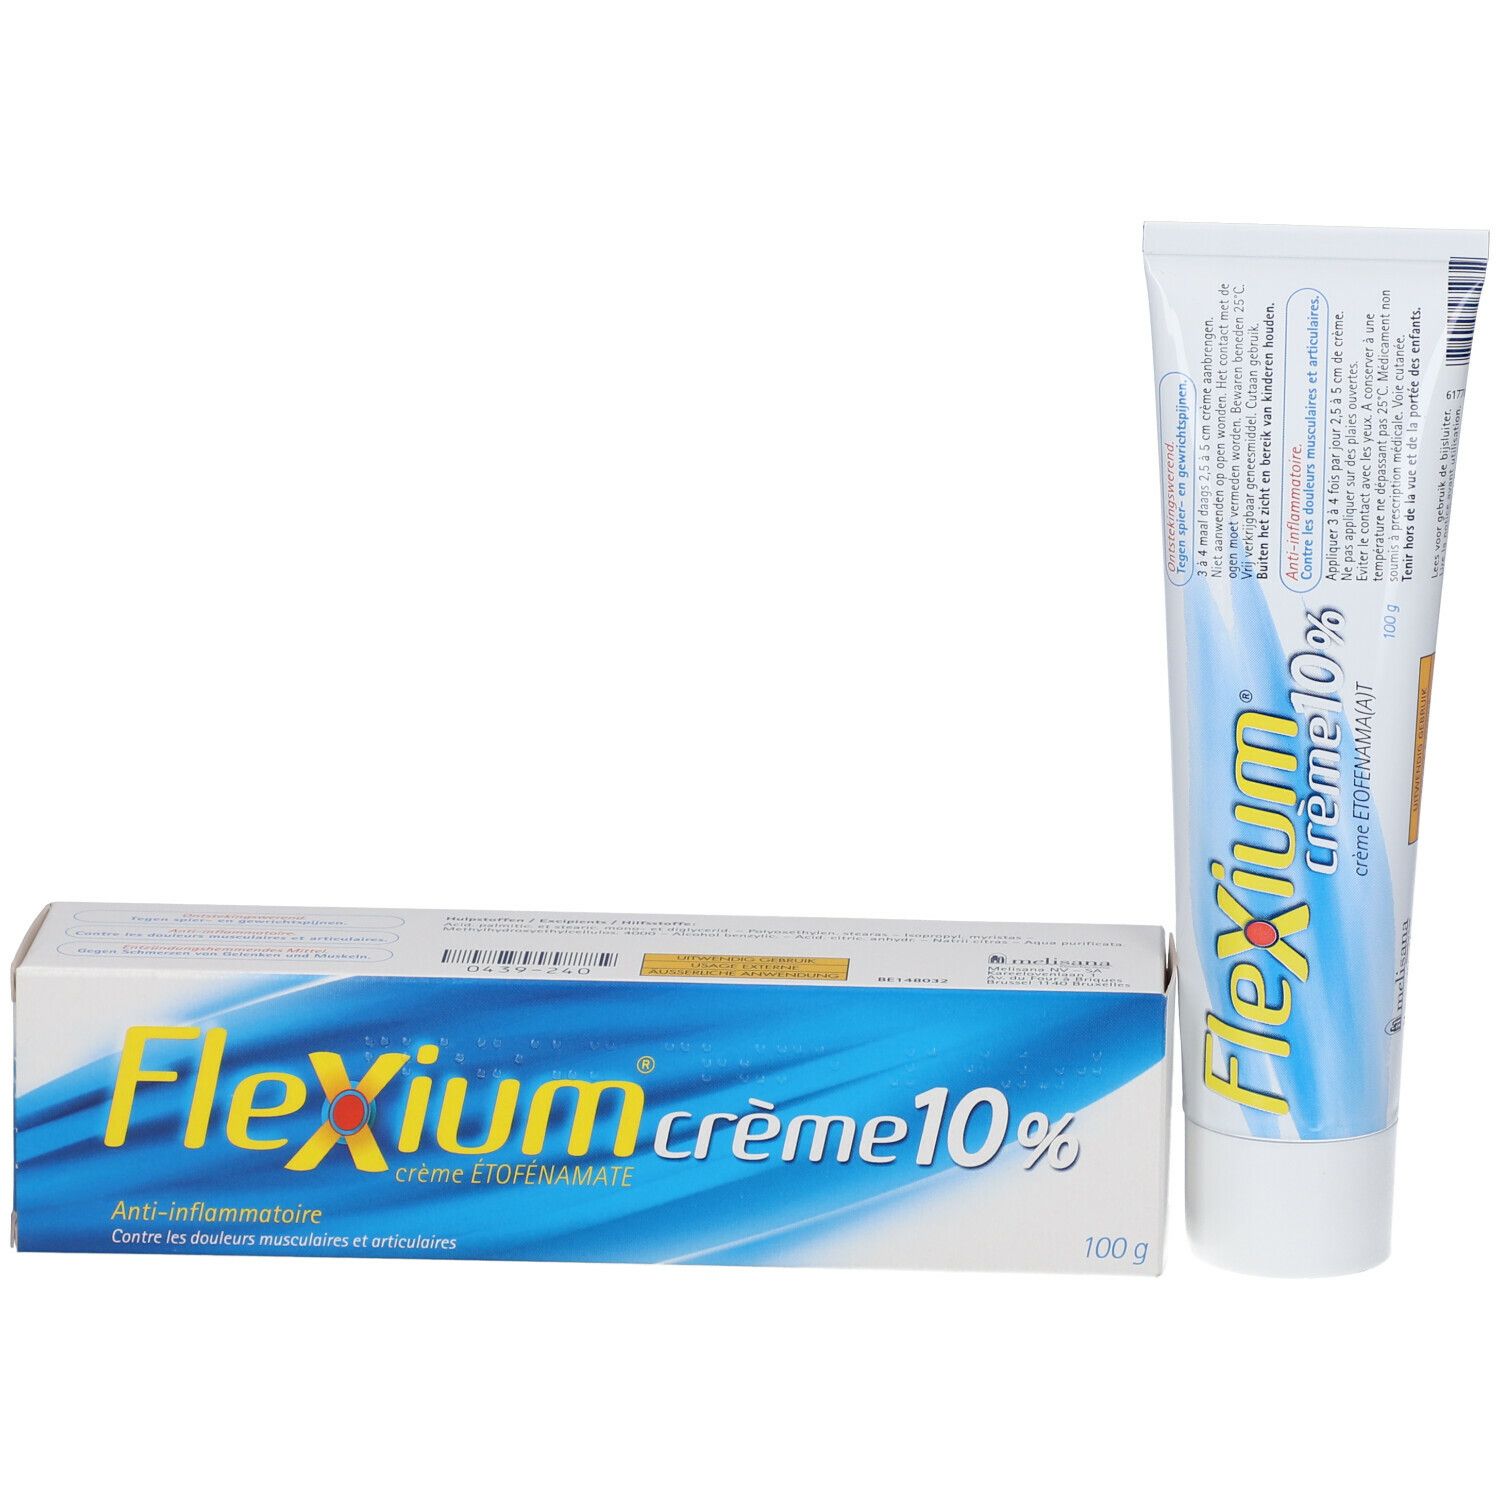 Flexium